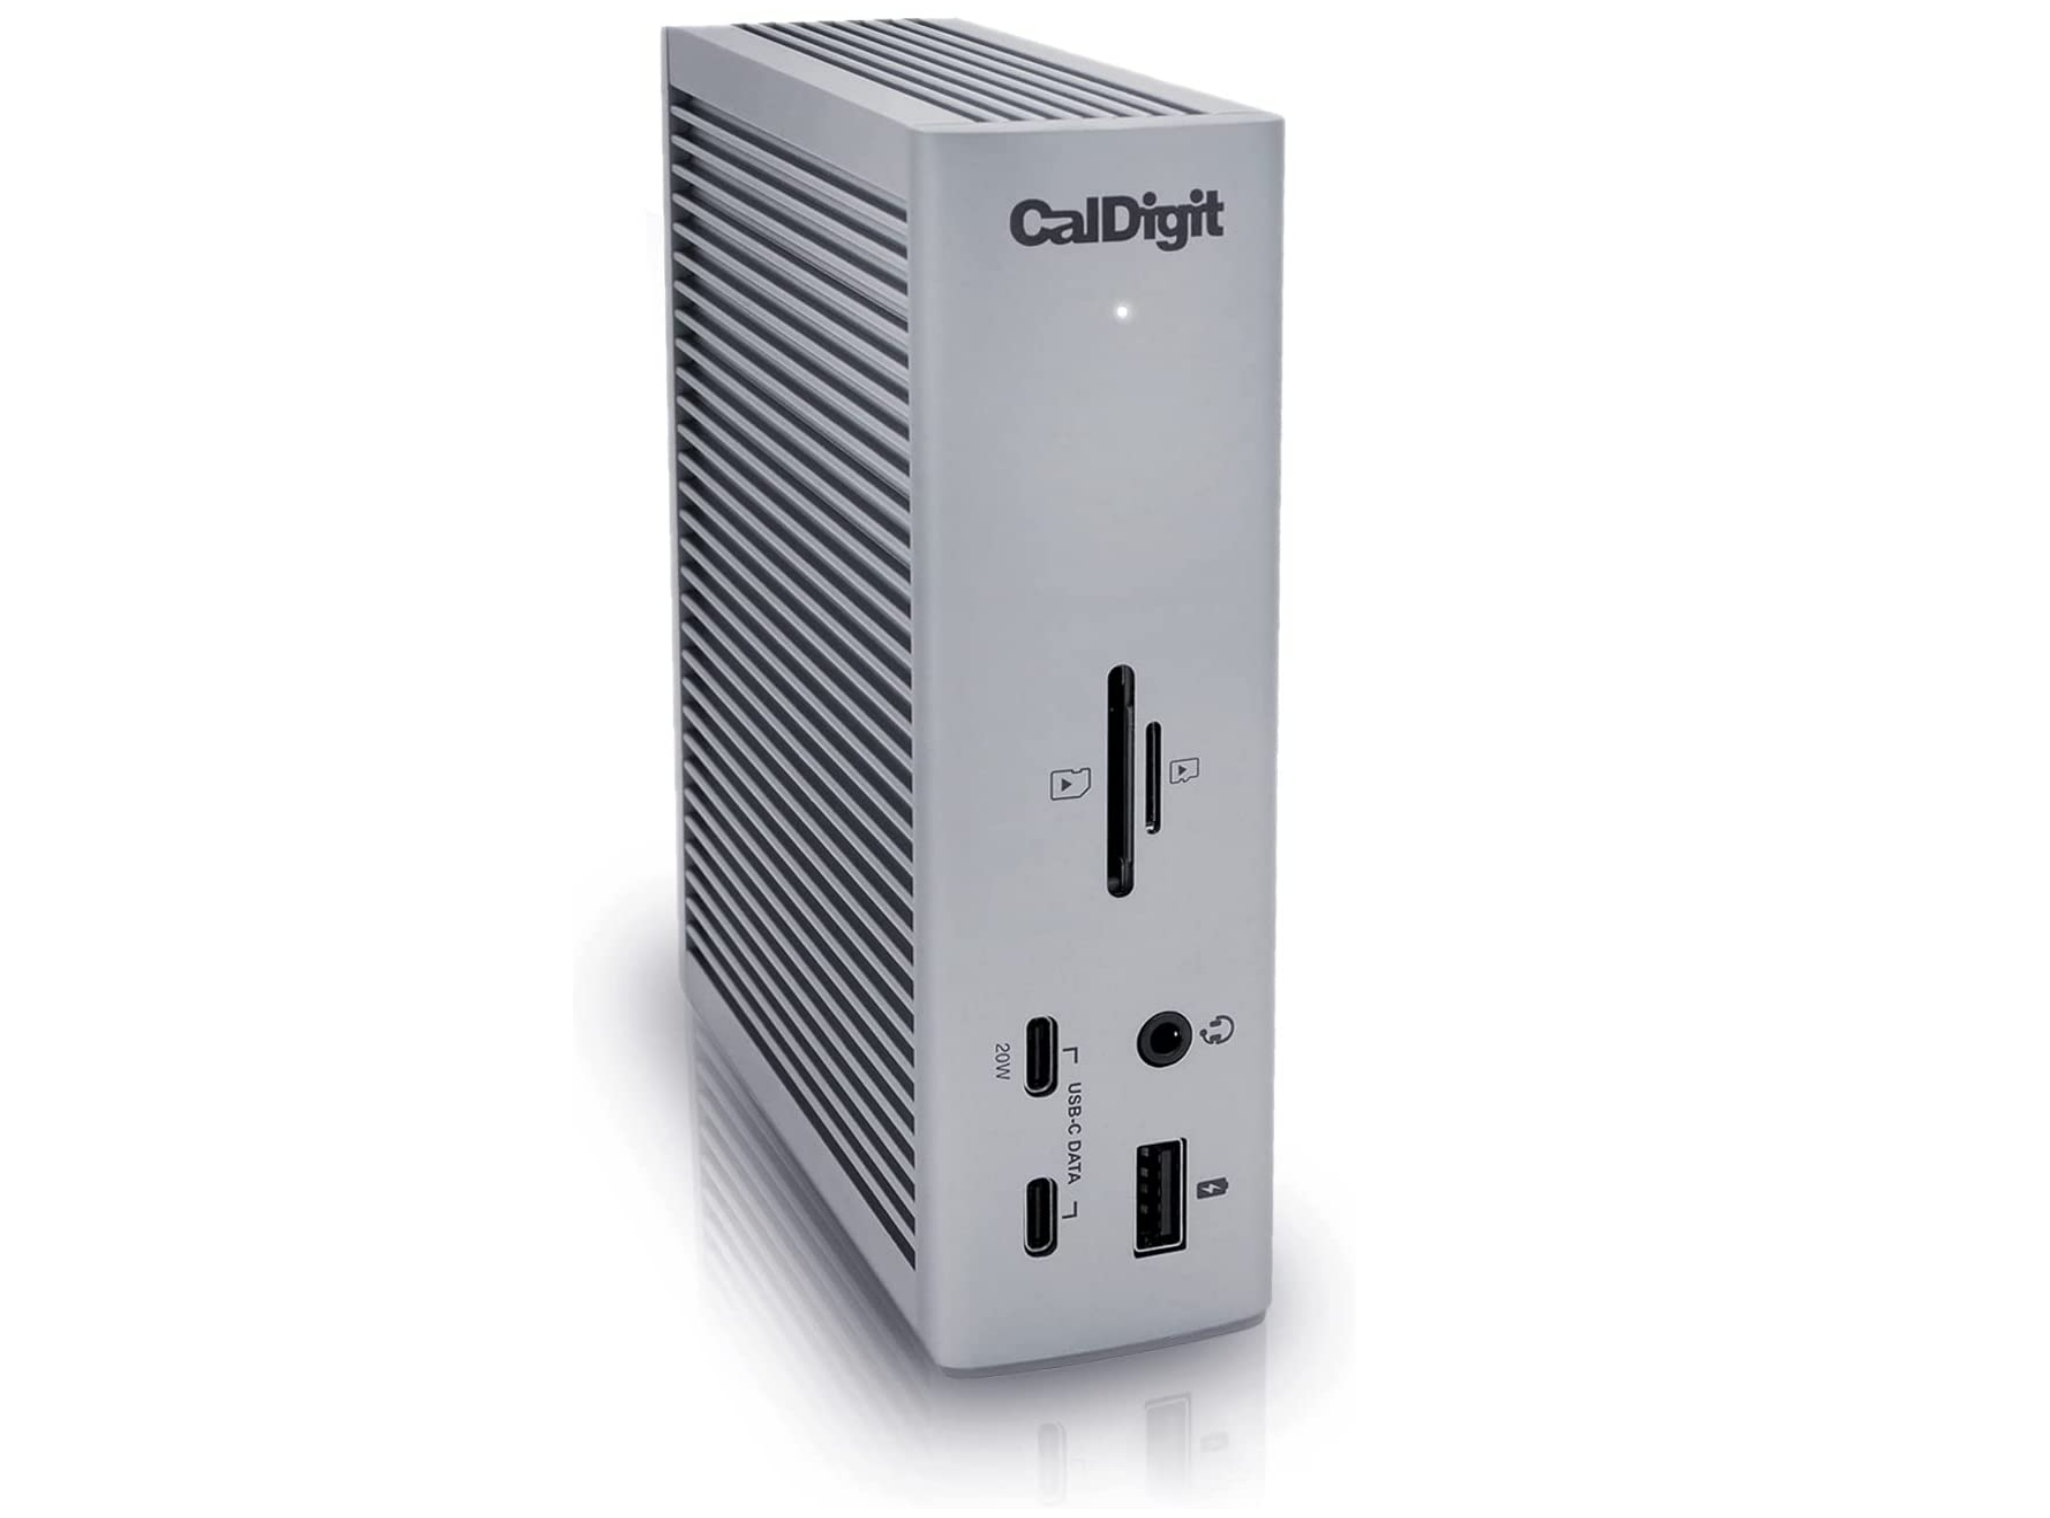 CalDigit Thunderbolt Station 4 (TS4) - Best for Apple Mac users